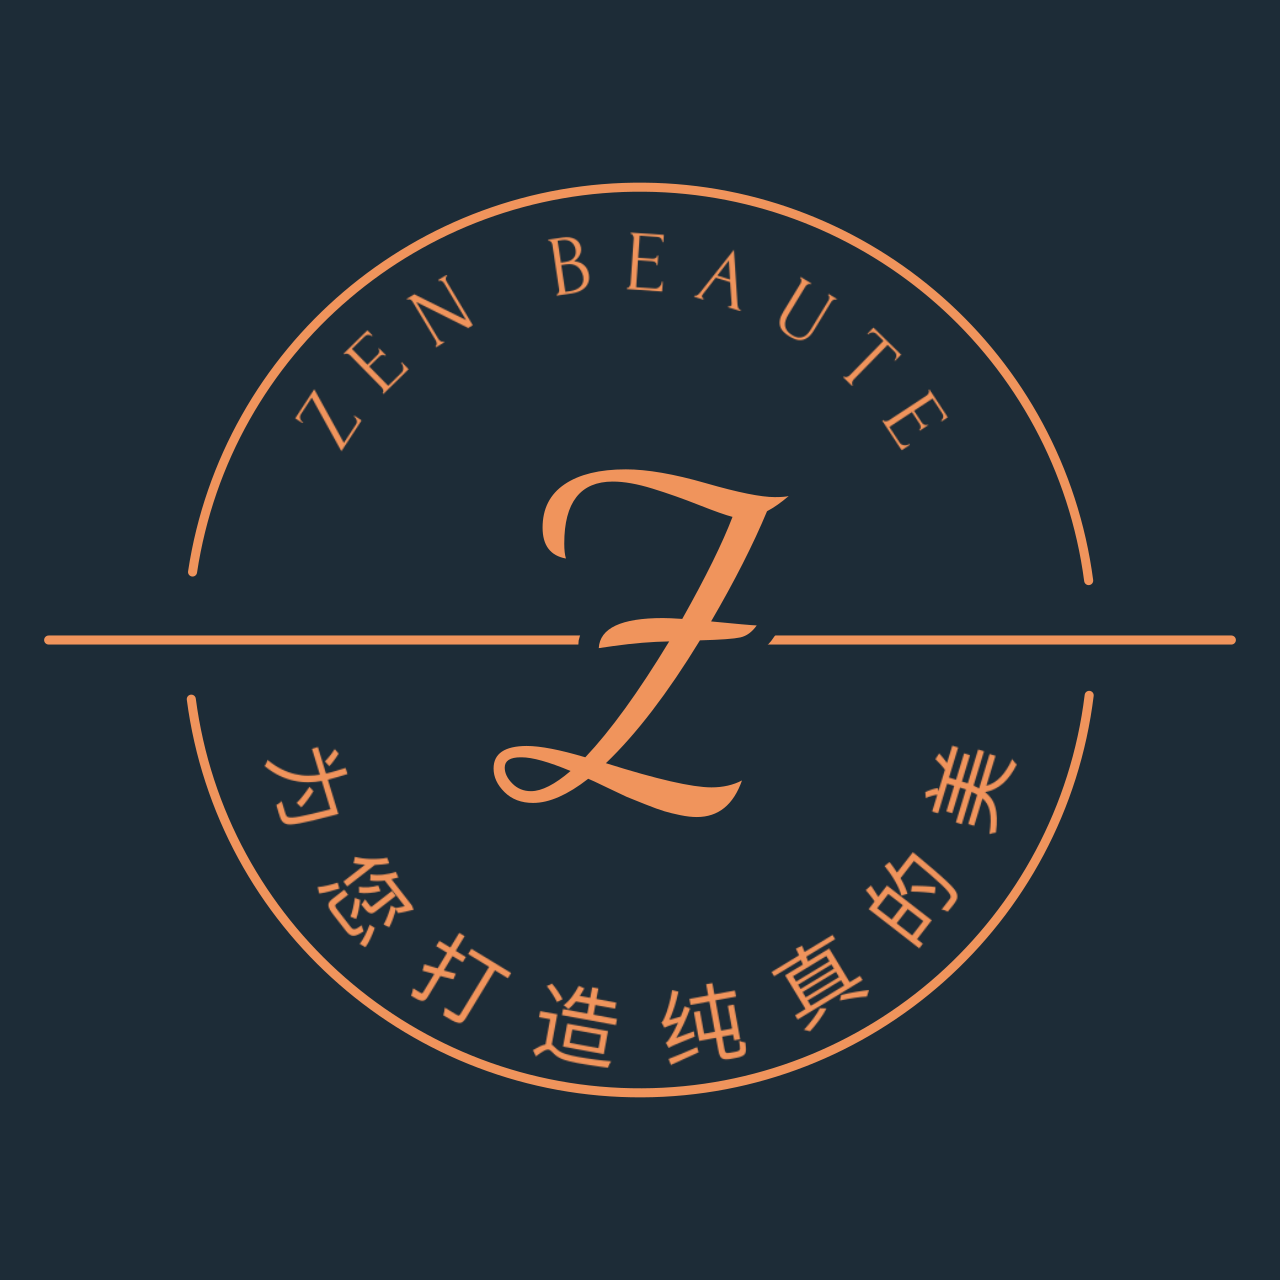 ZEN BEAUTE's logo